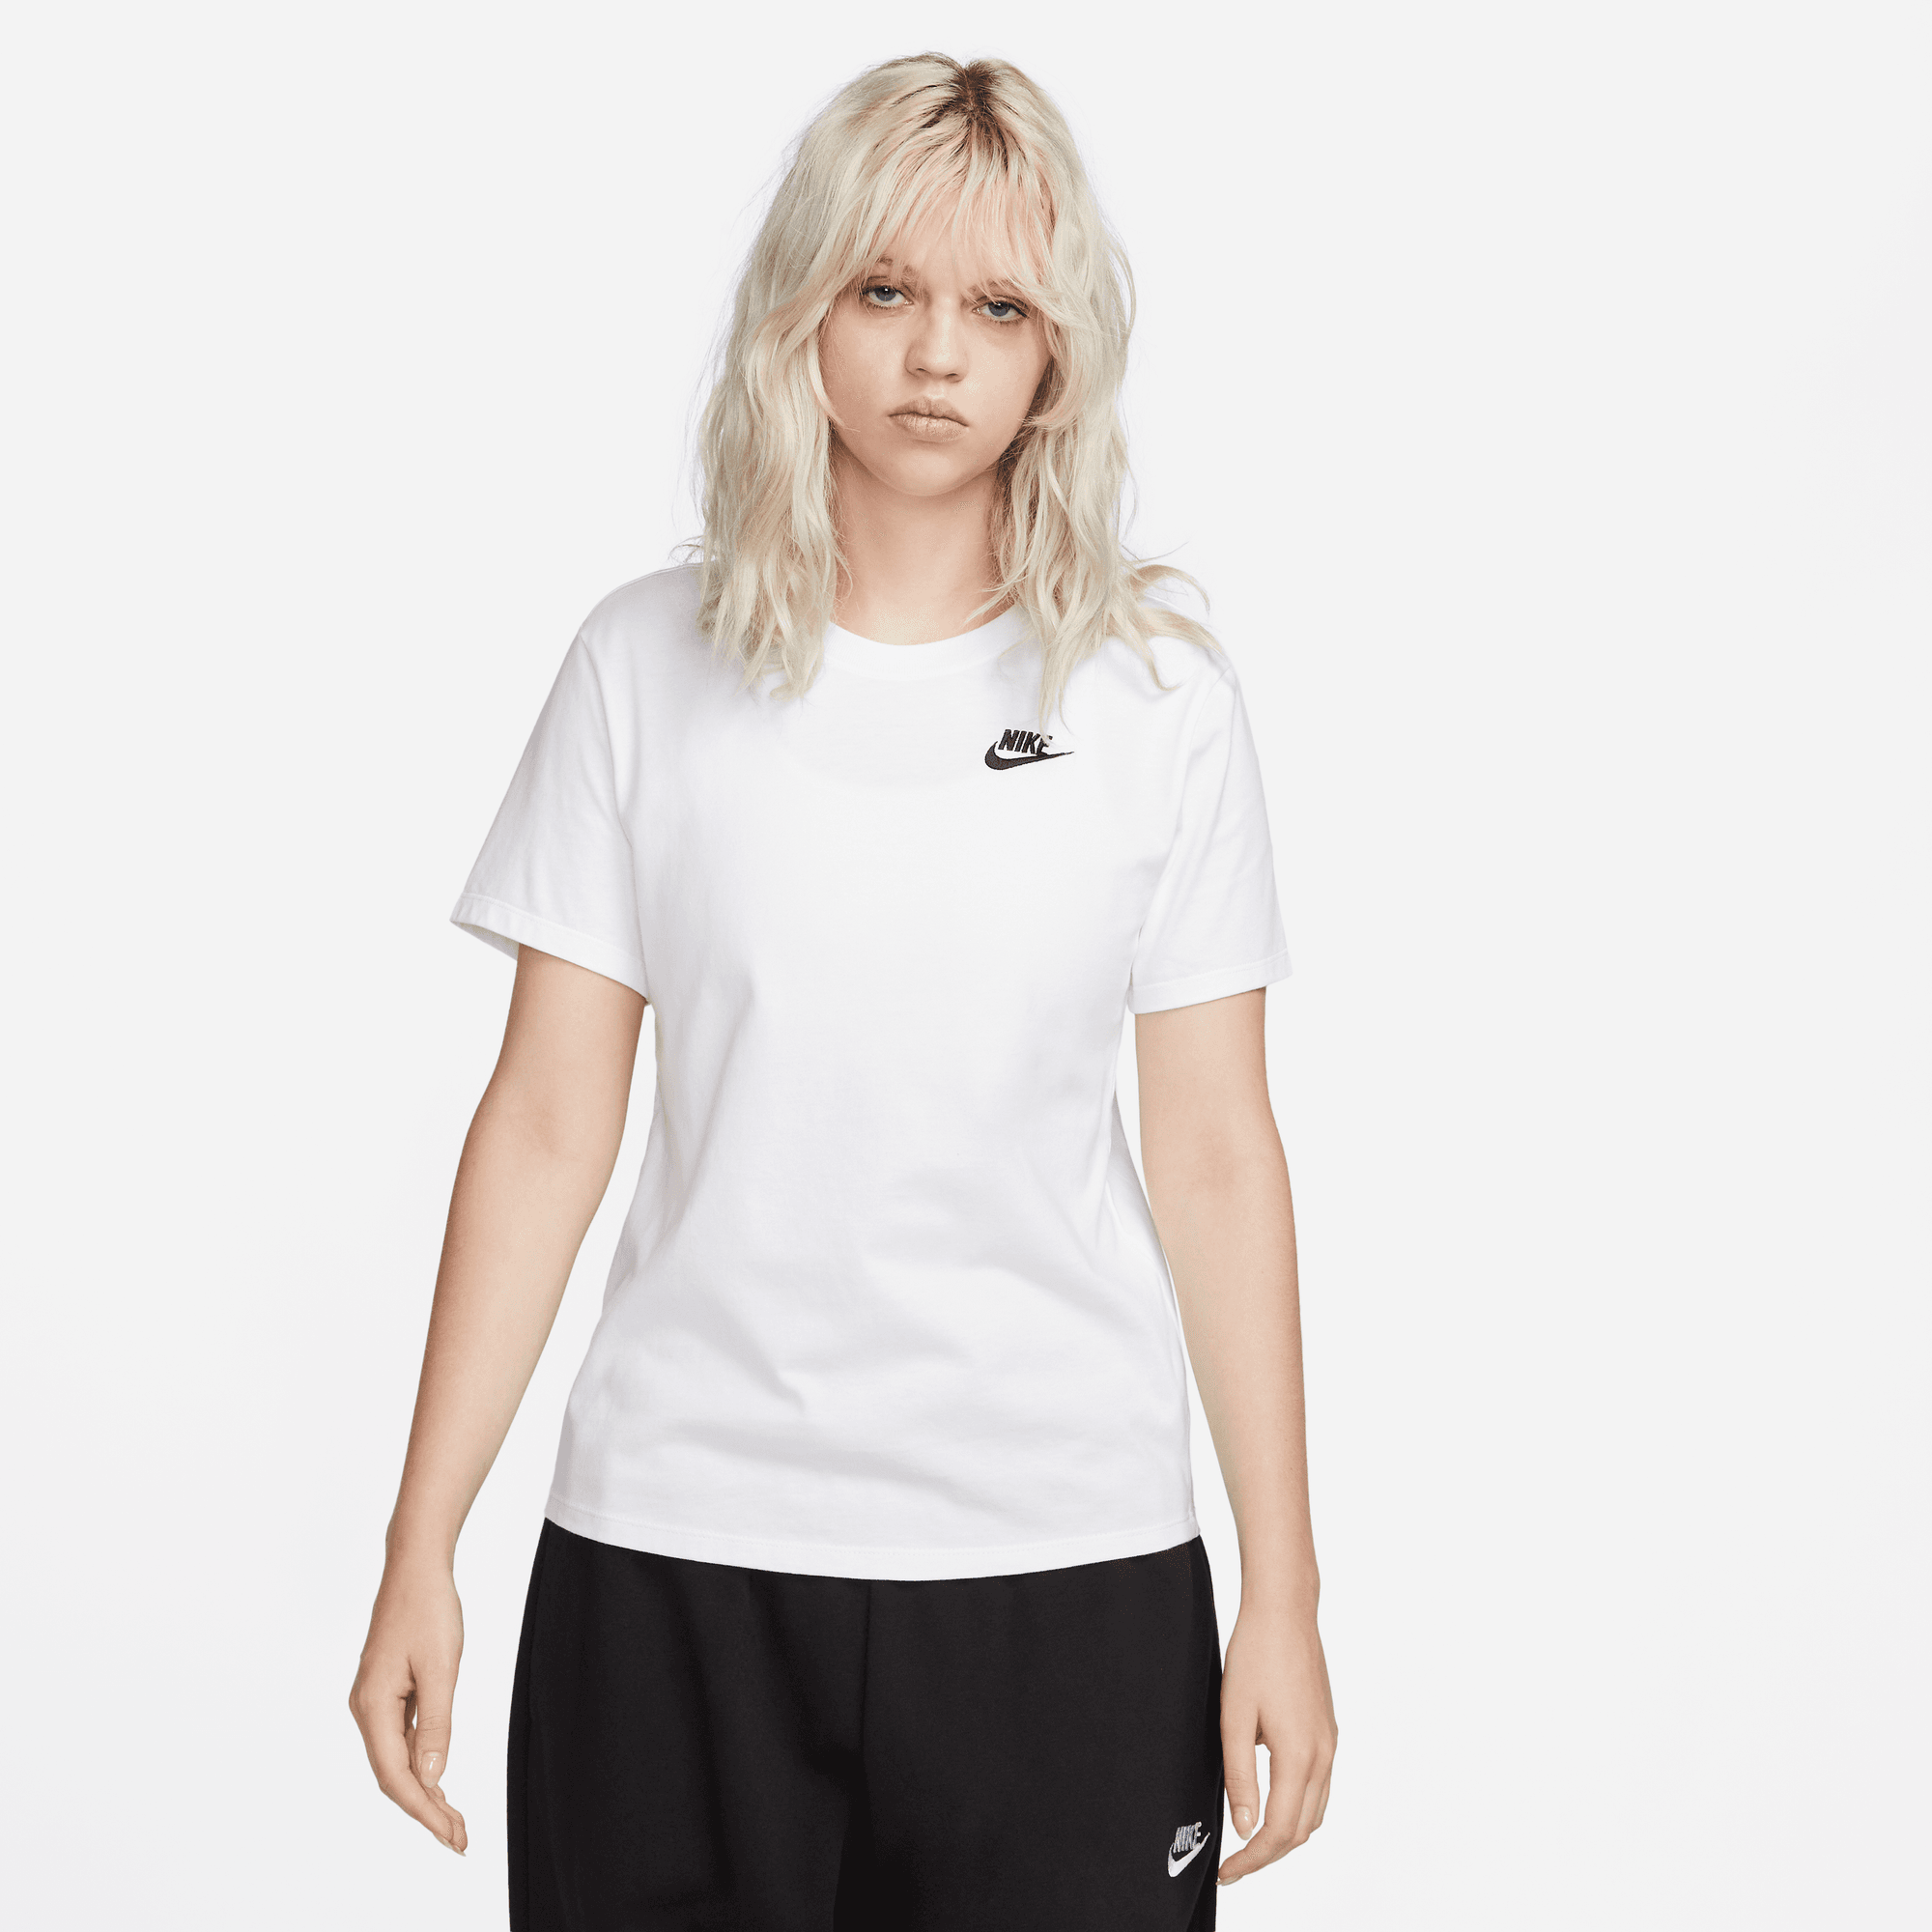 Nike Sportswear Essential Women's T-Shirt.